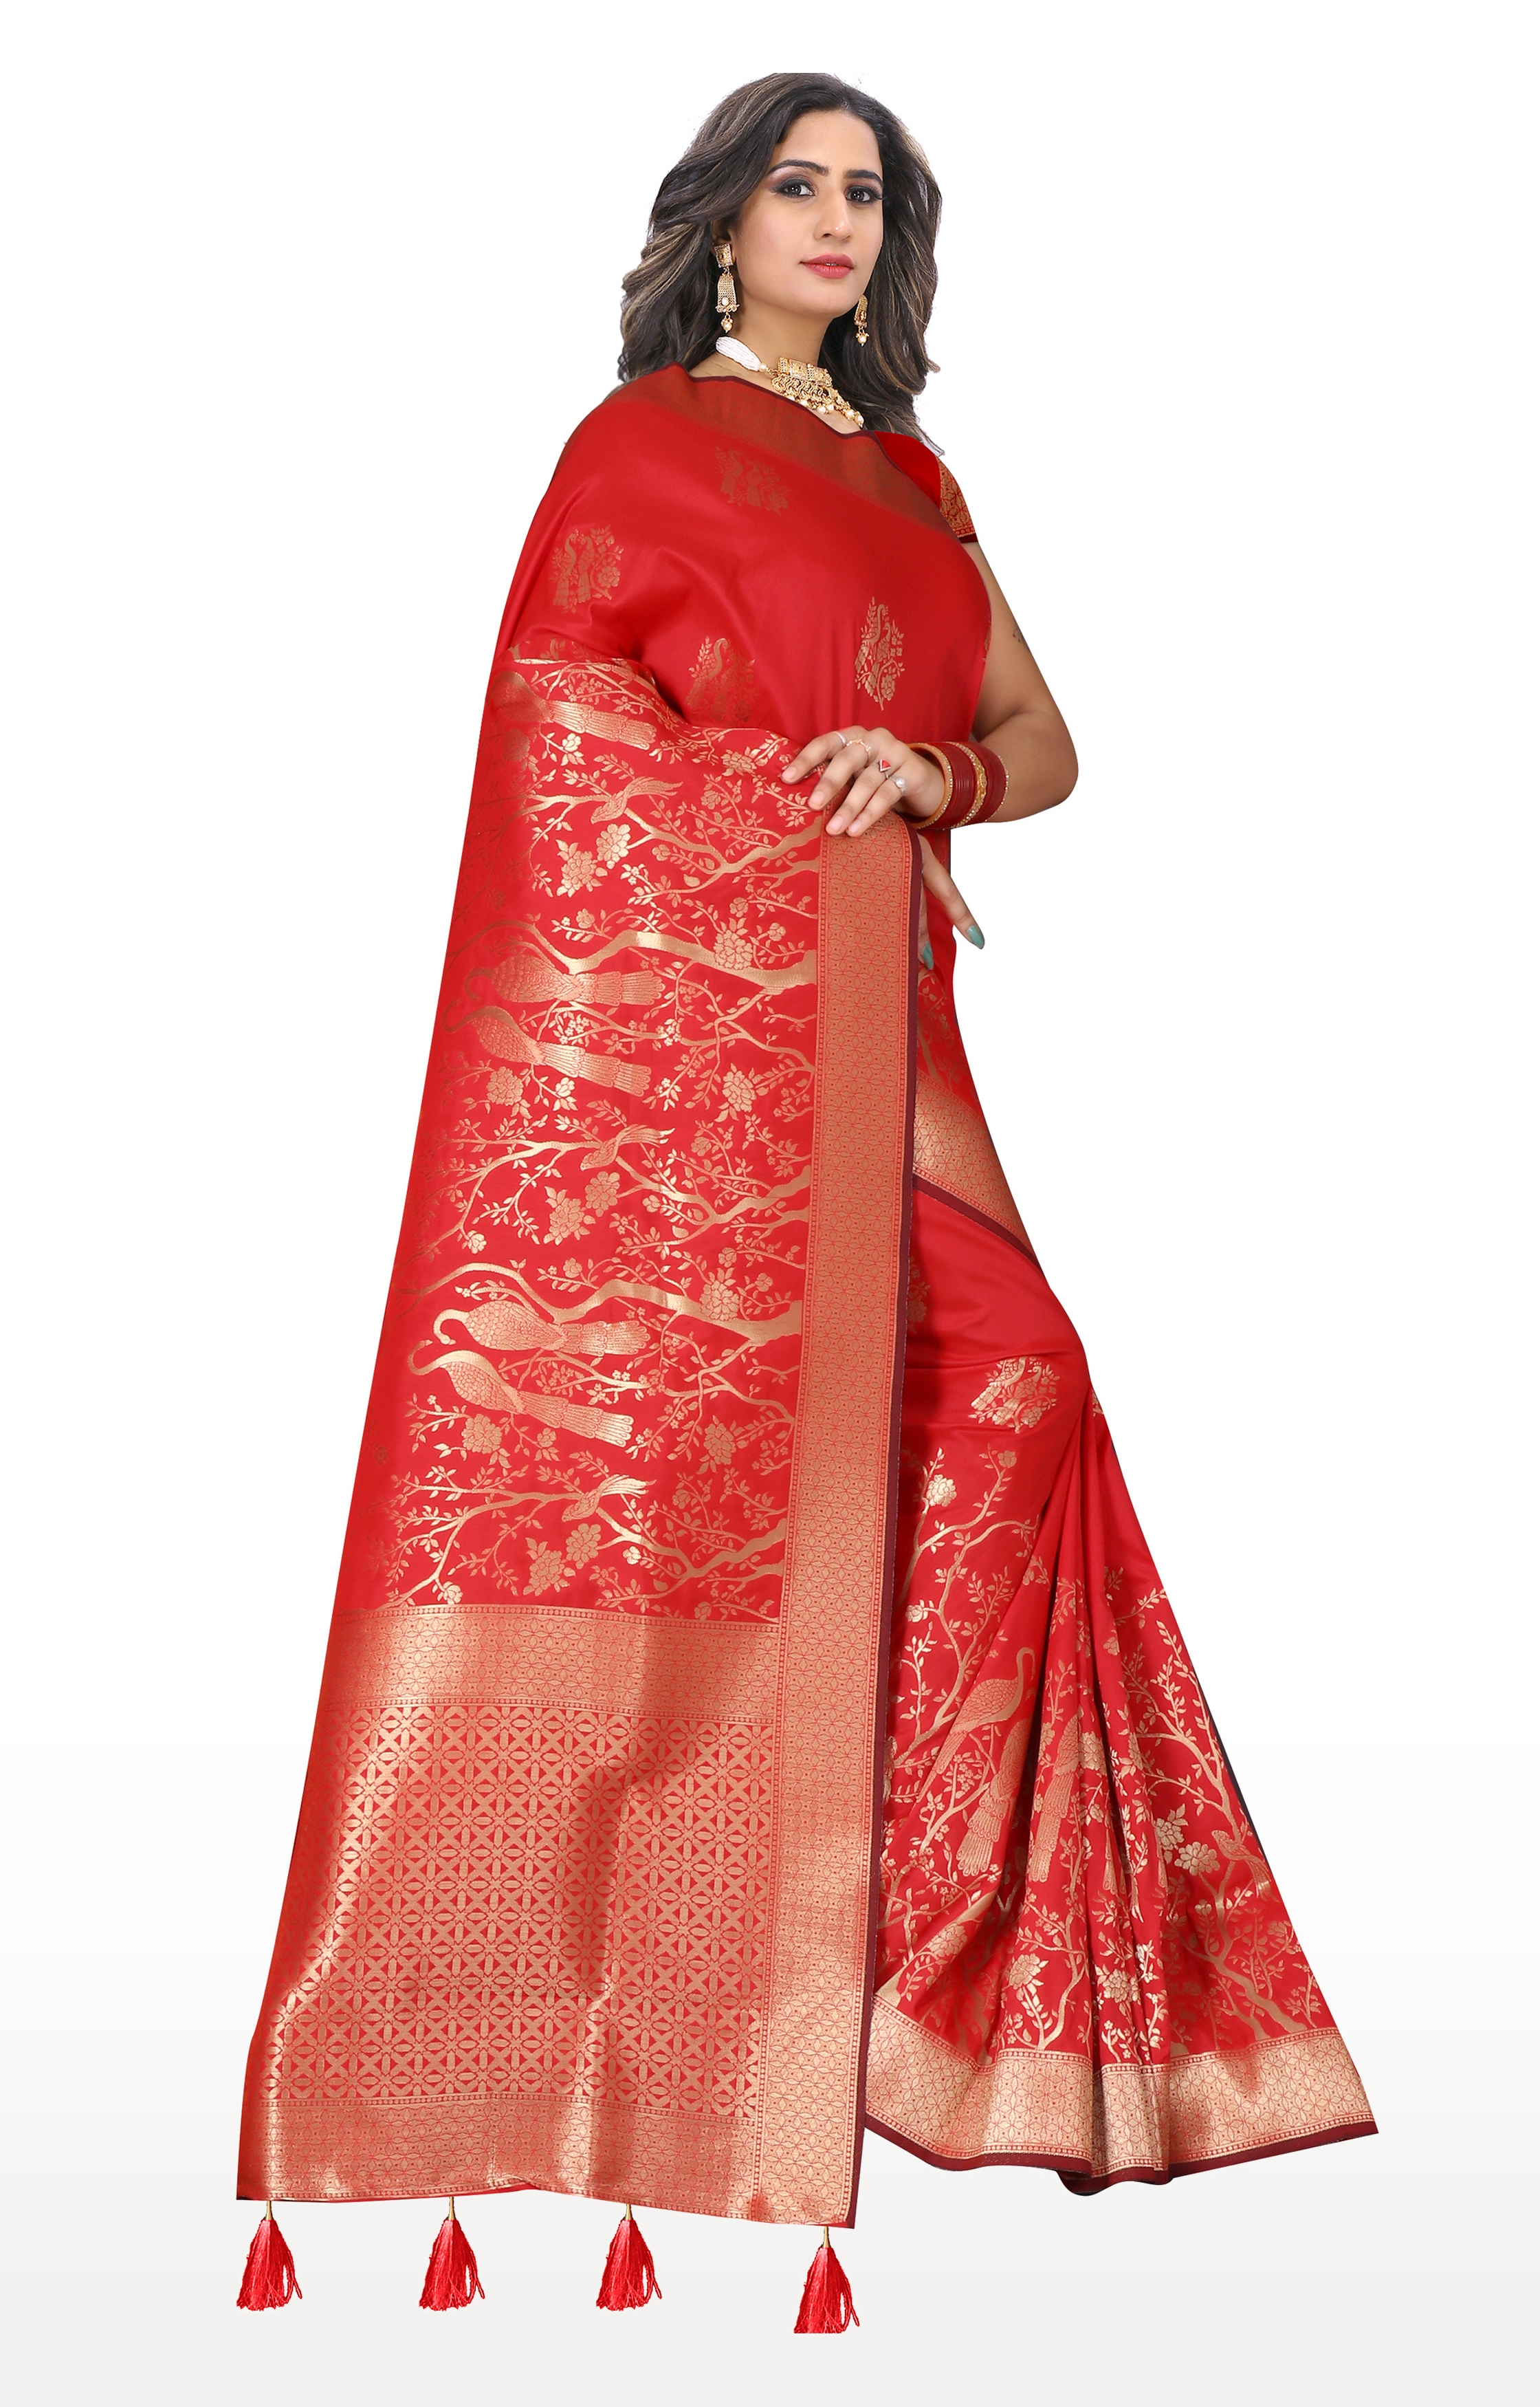 Glemora | Glemora Saree for Women Banarasi Silk Saree With Blouse (Red) 2